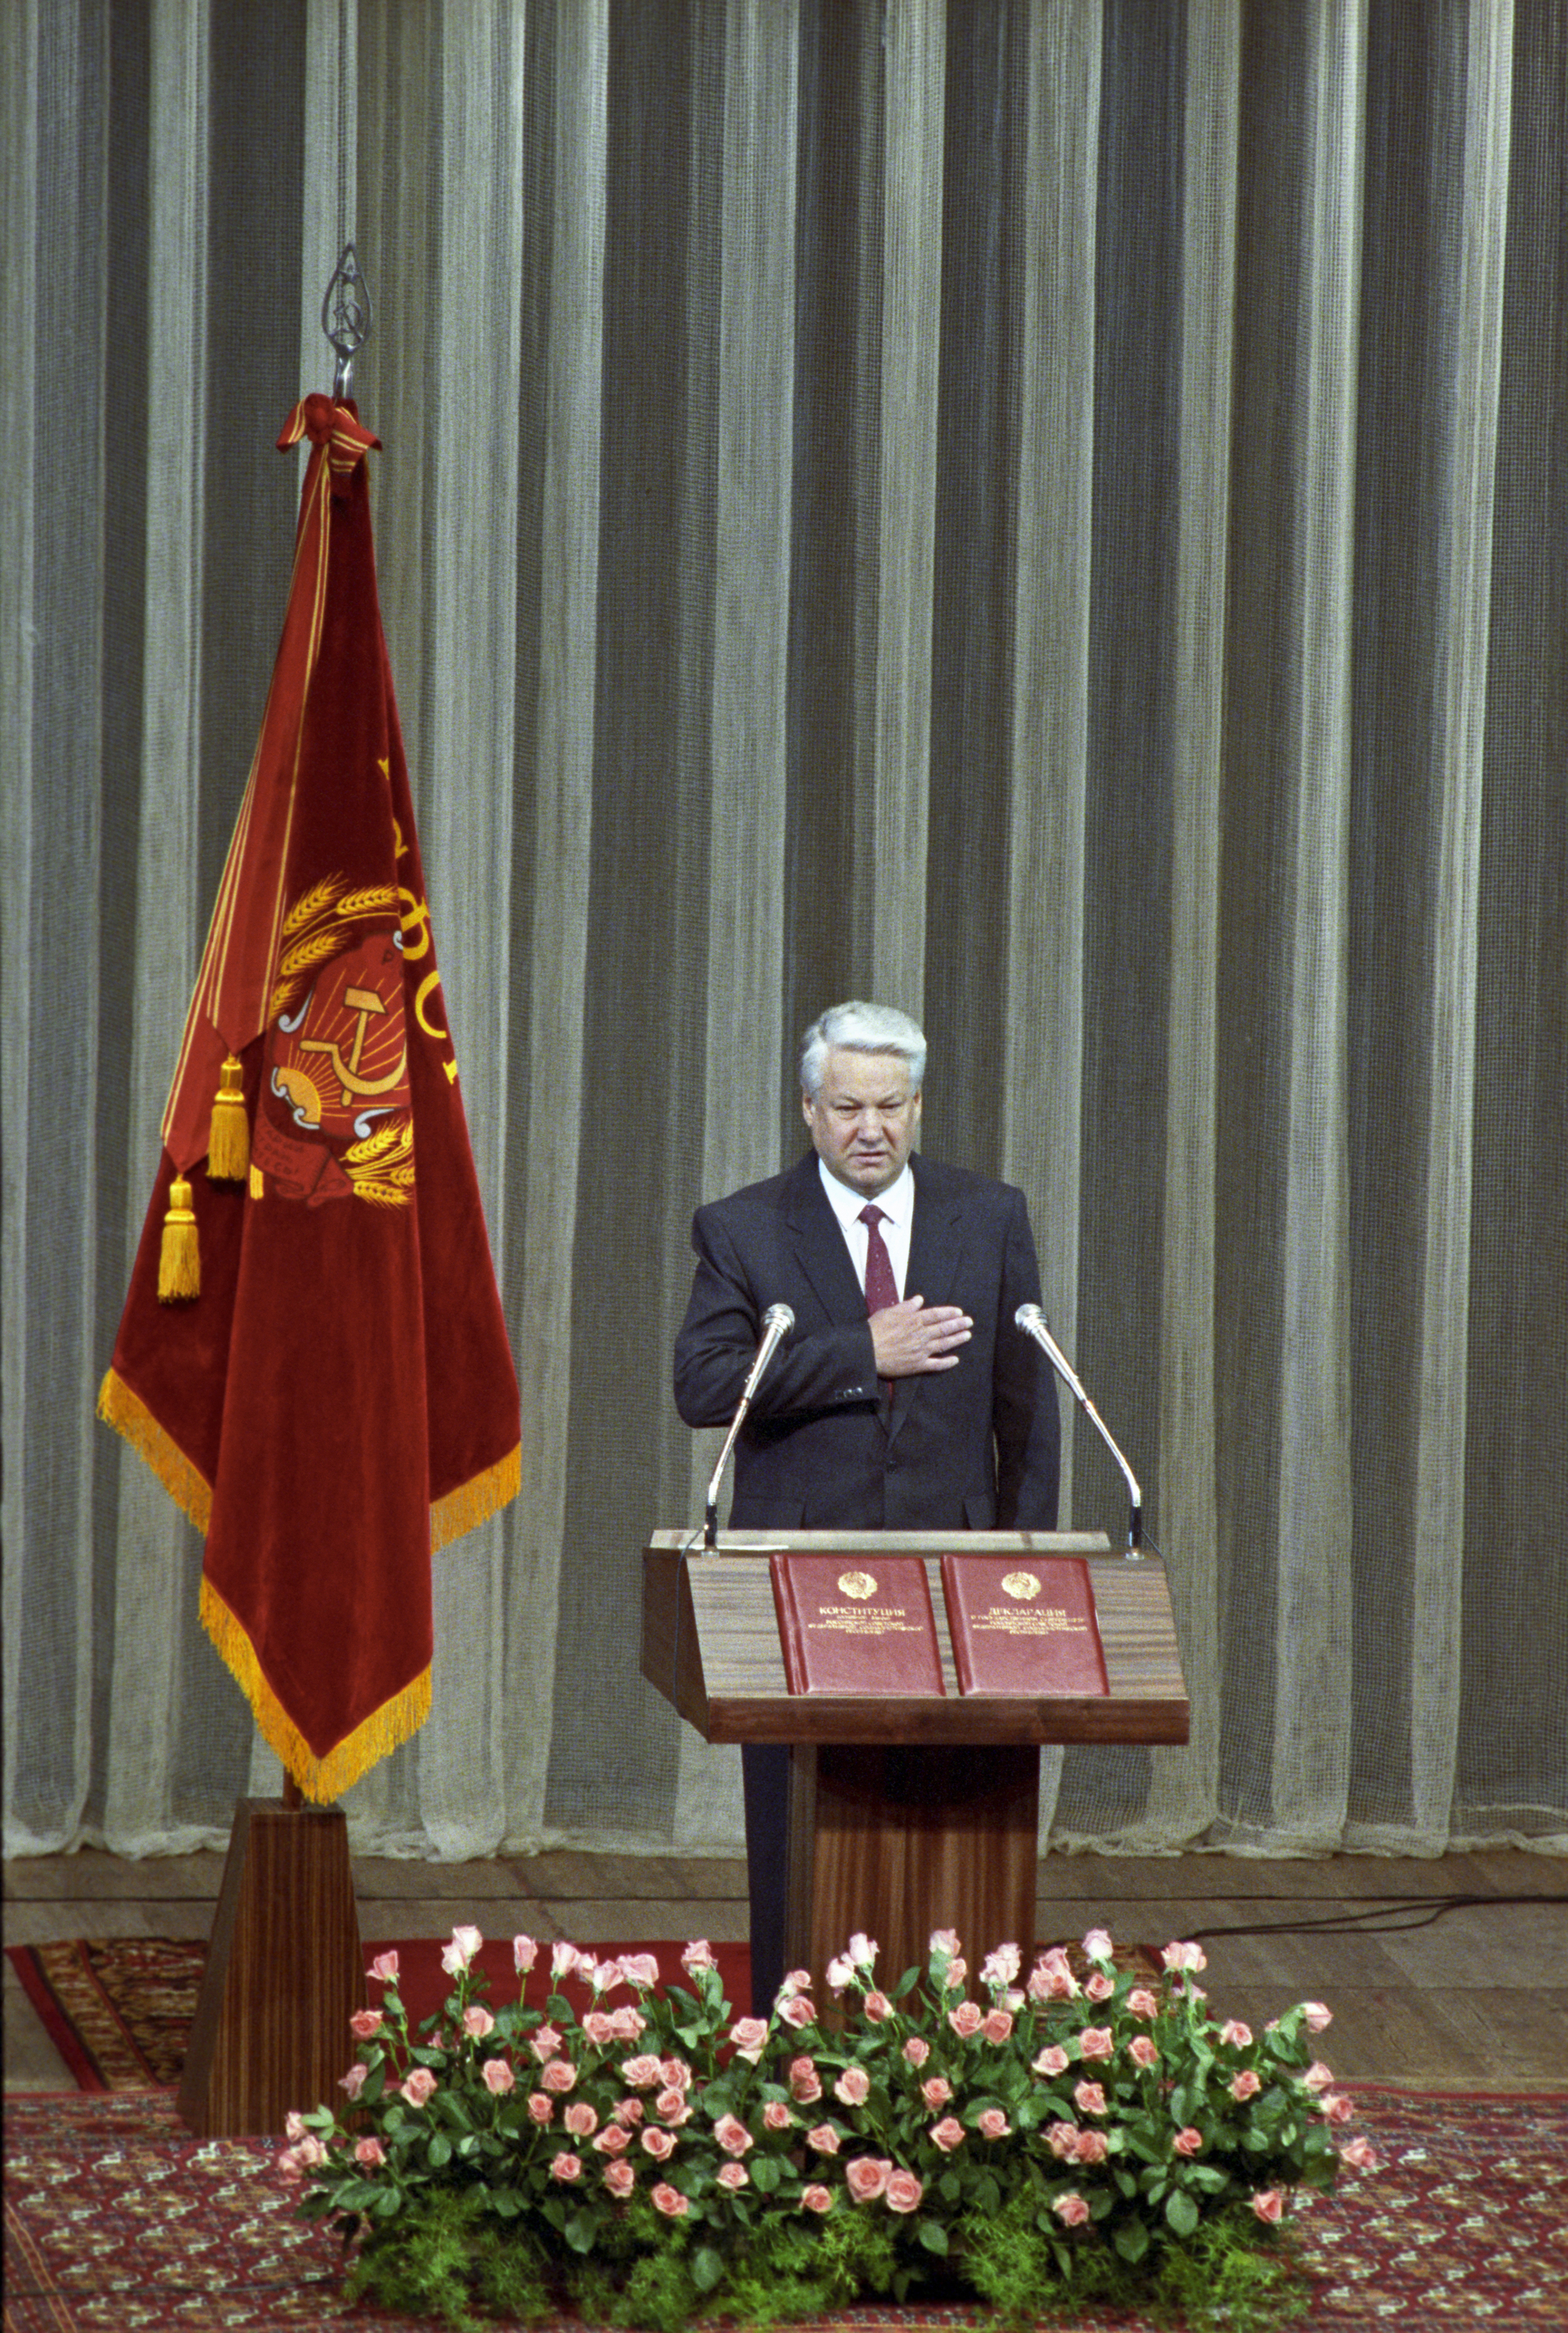 Выборы президента 1991 года в россии